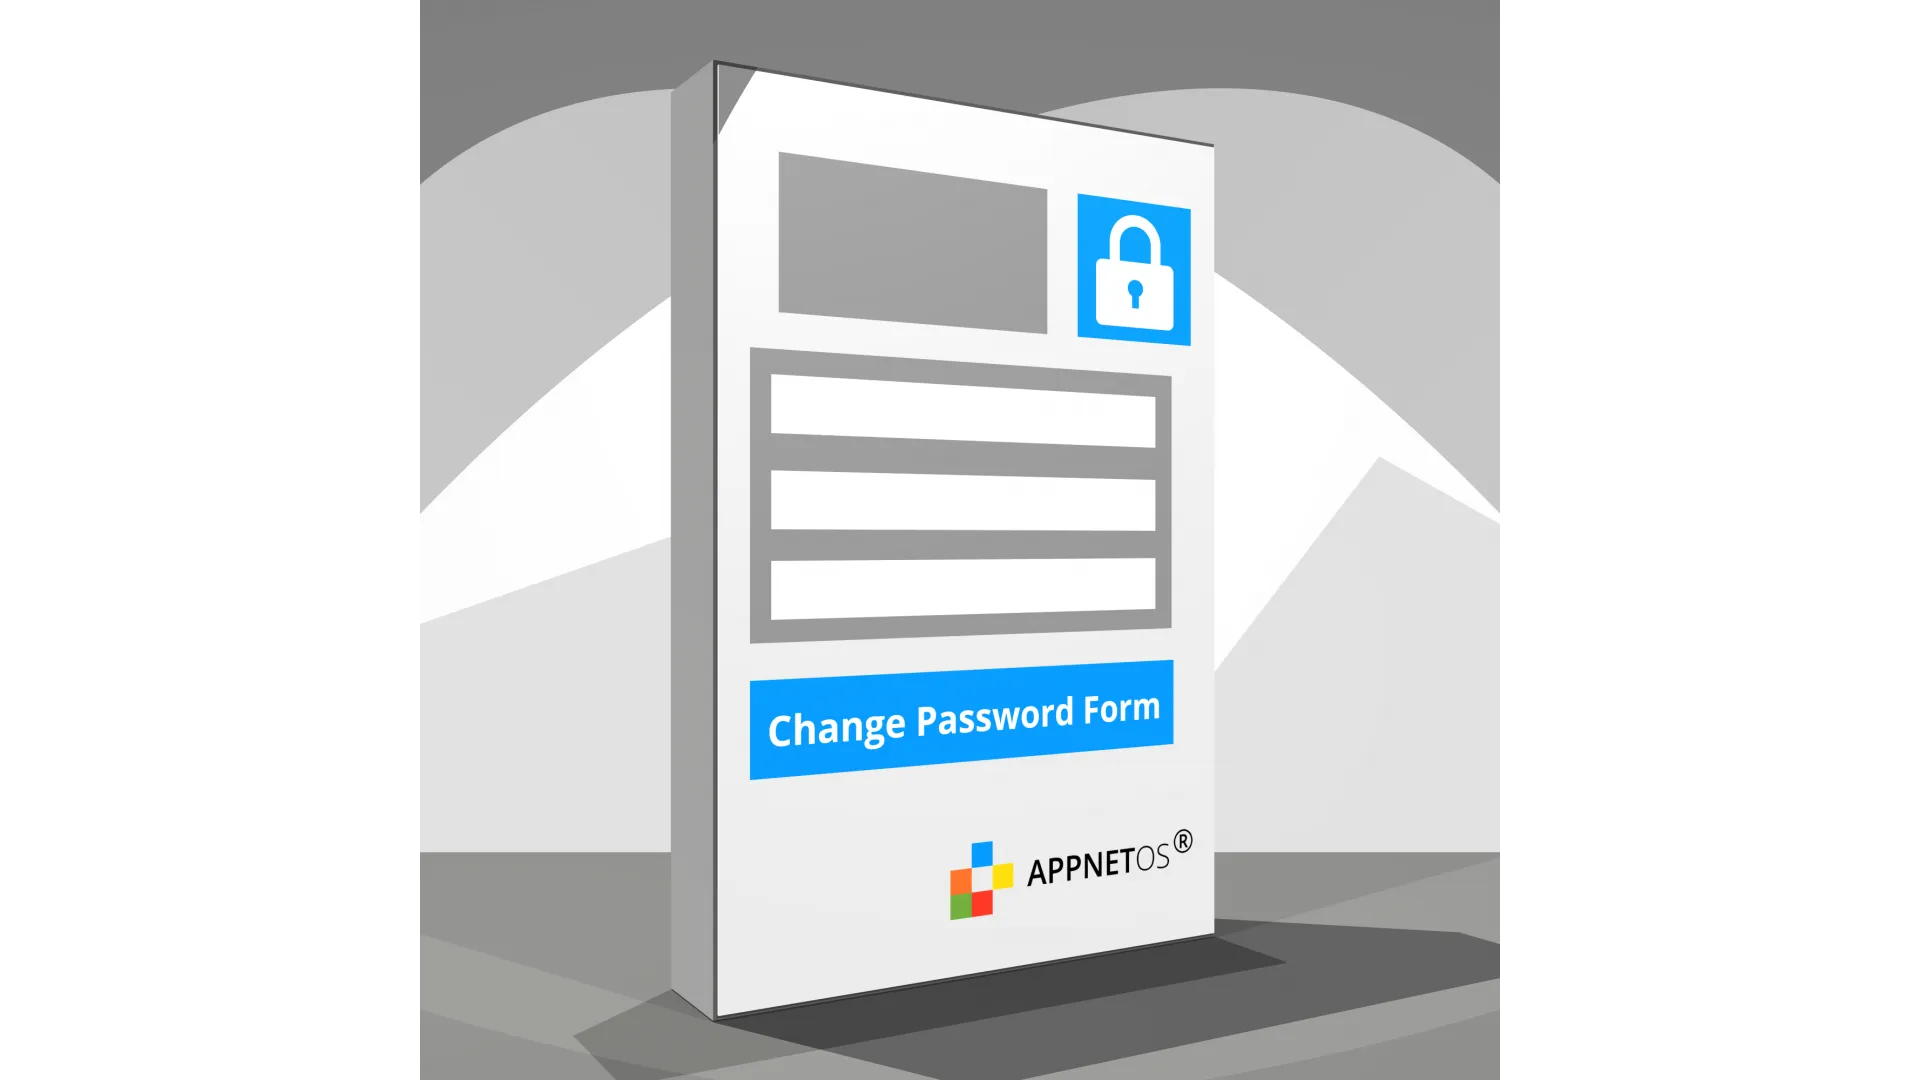 APPNET OS Passwort ändern Formular